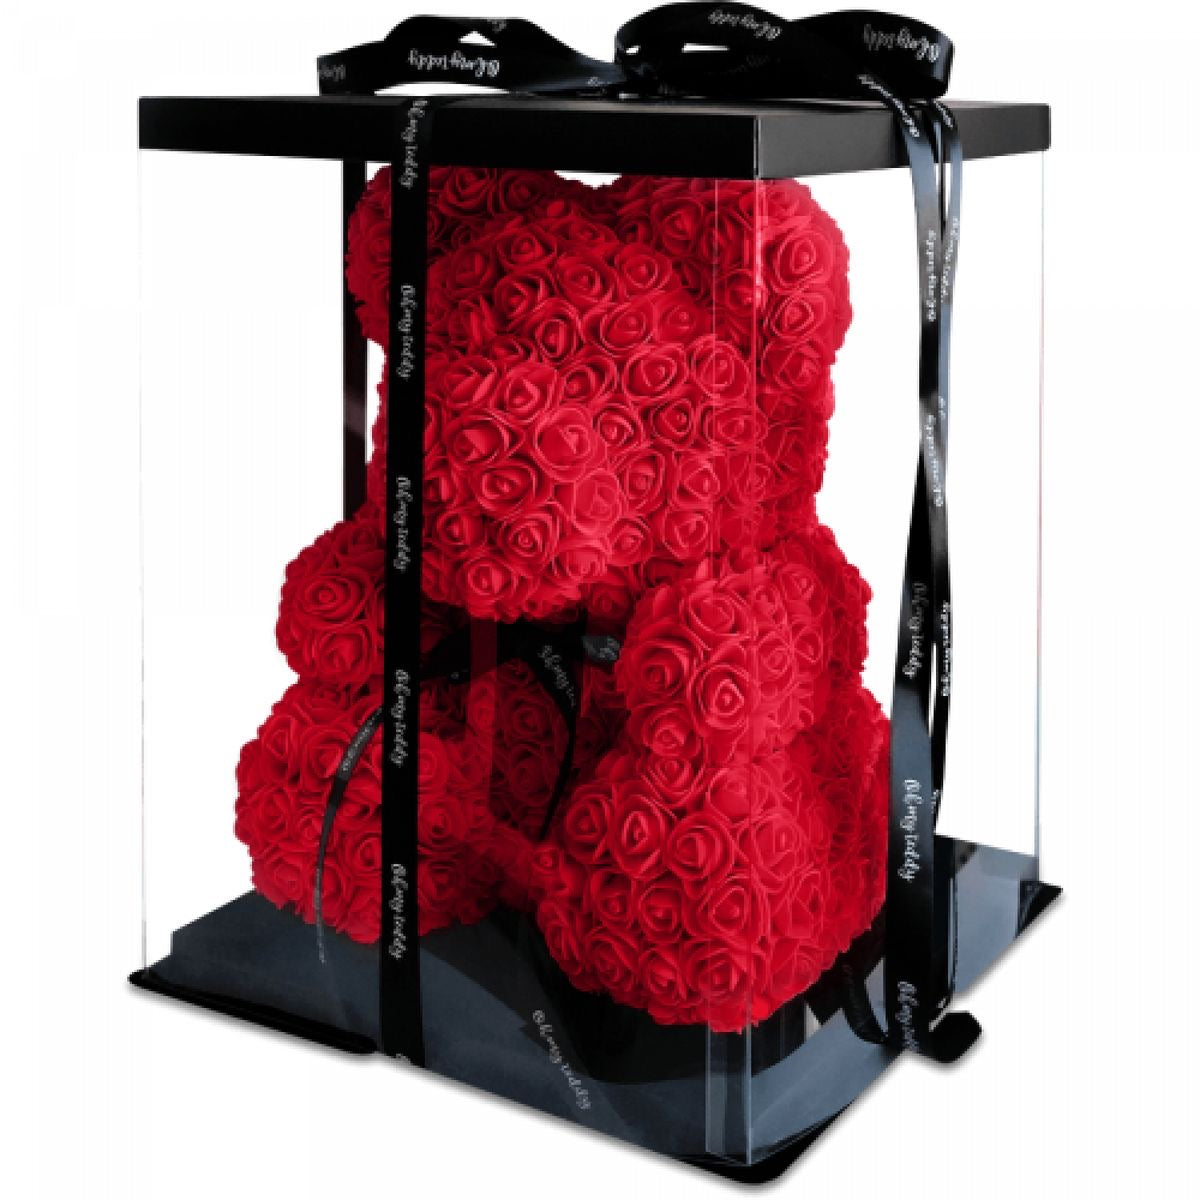 Roses Teddy Bear - Full Love package